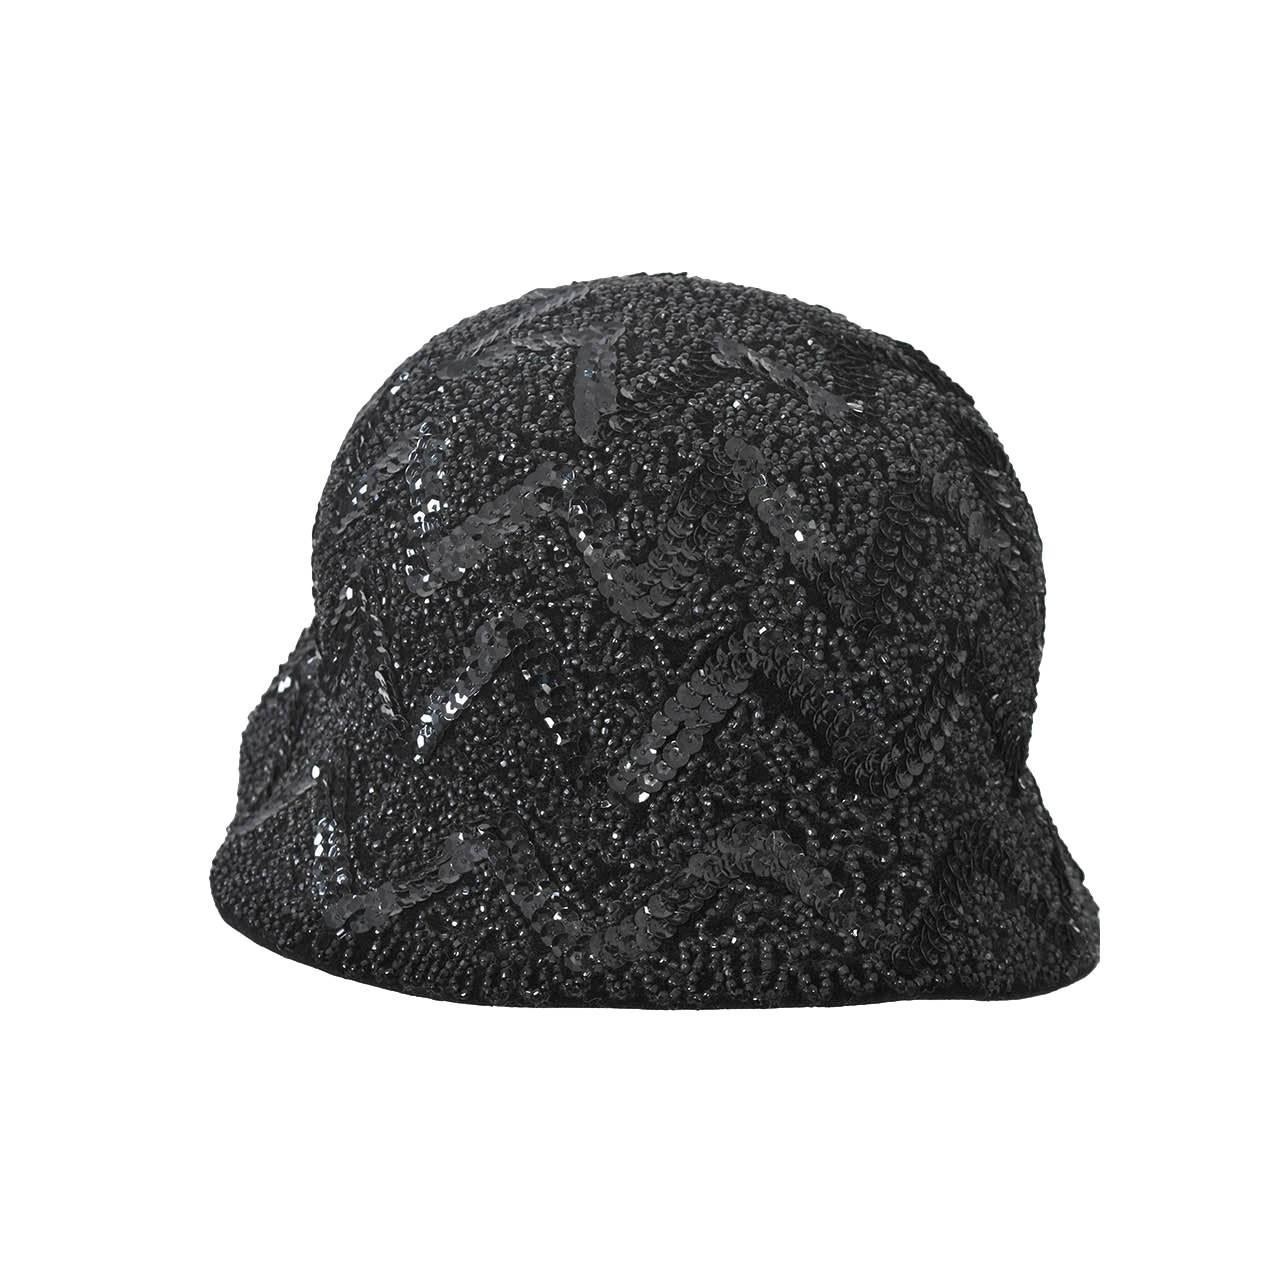 Bonwit Teller Black Beaded Hat For Sale